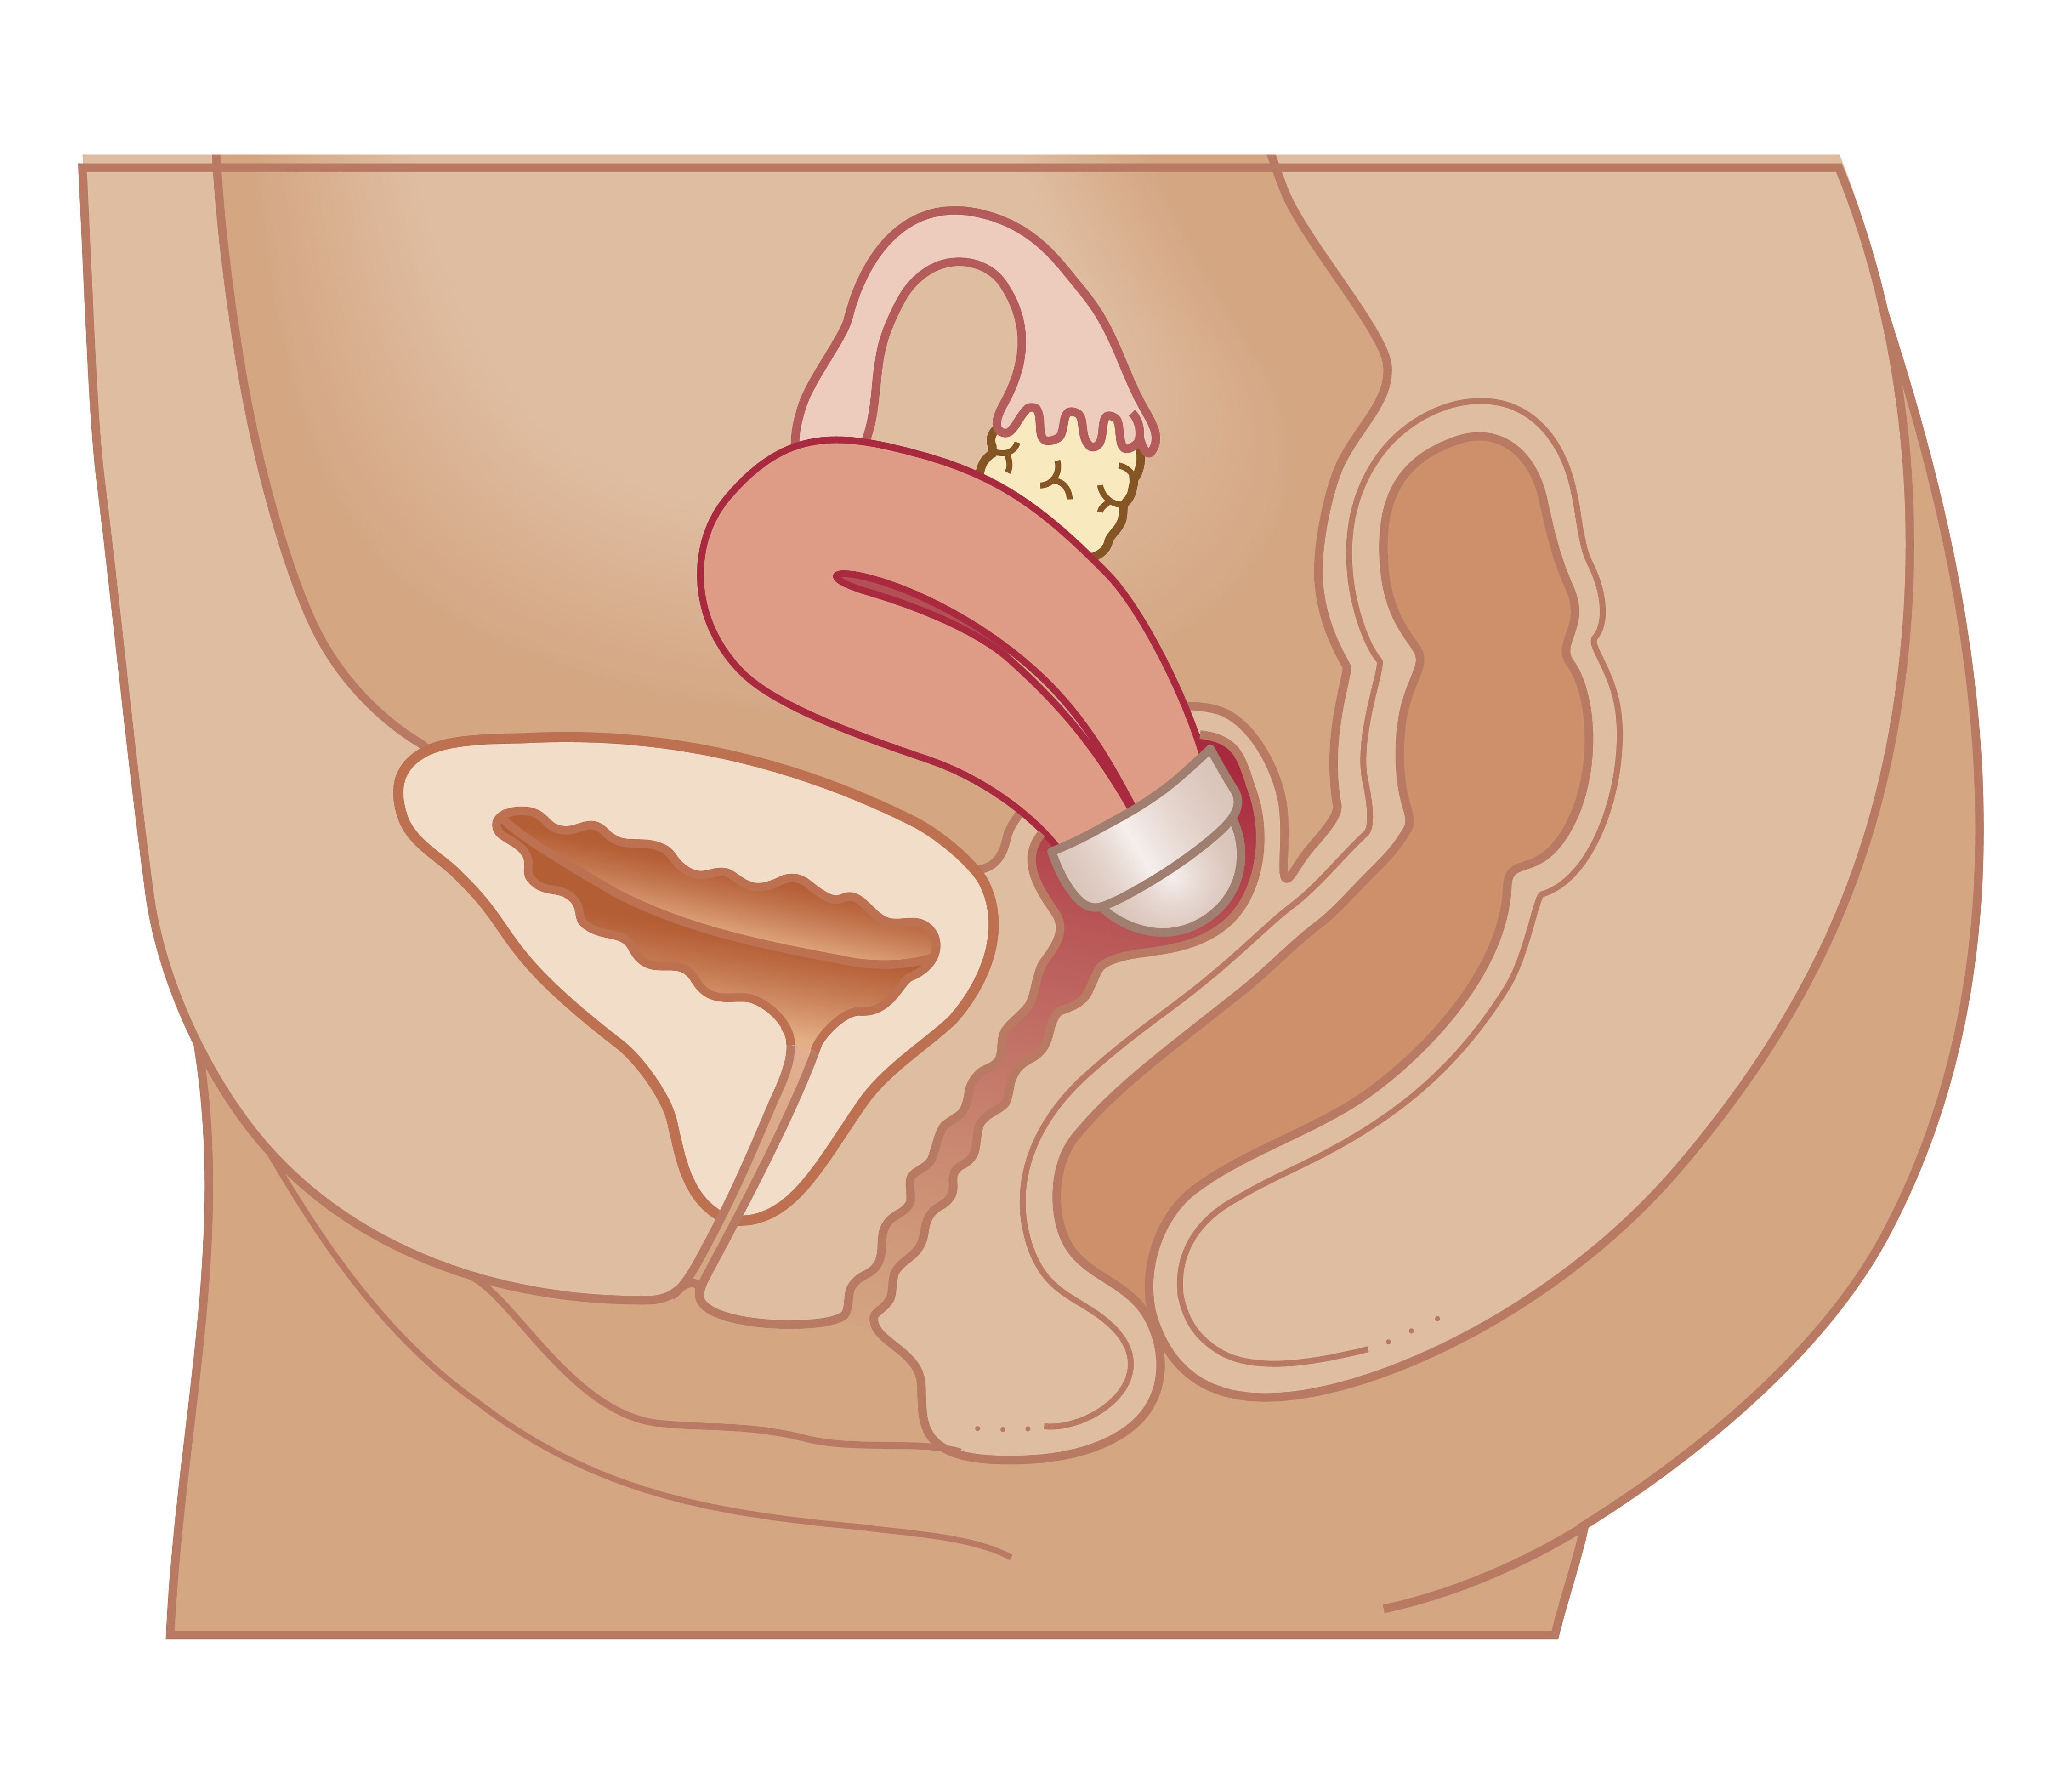 Intrauterine Device, östrogen progestin, blockerar öppningen, Denna metod, Depo Provera, Depo Provera-skottet